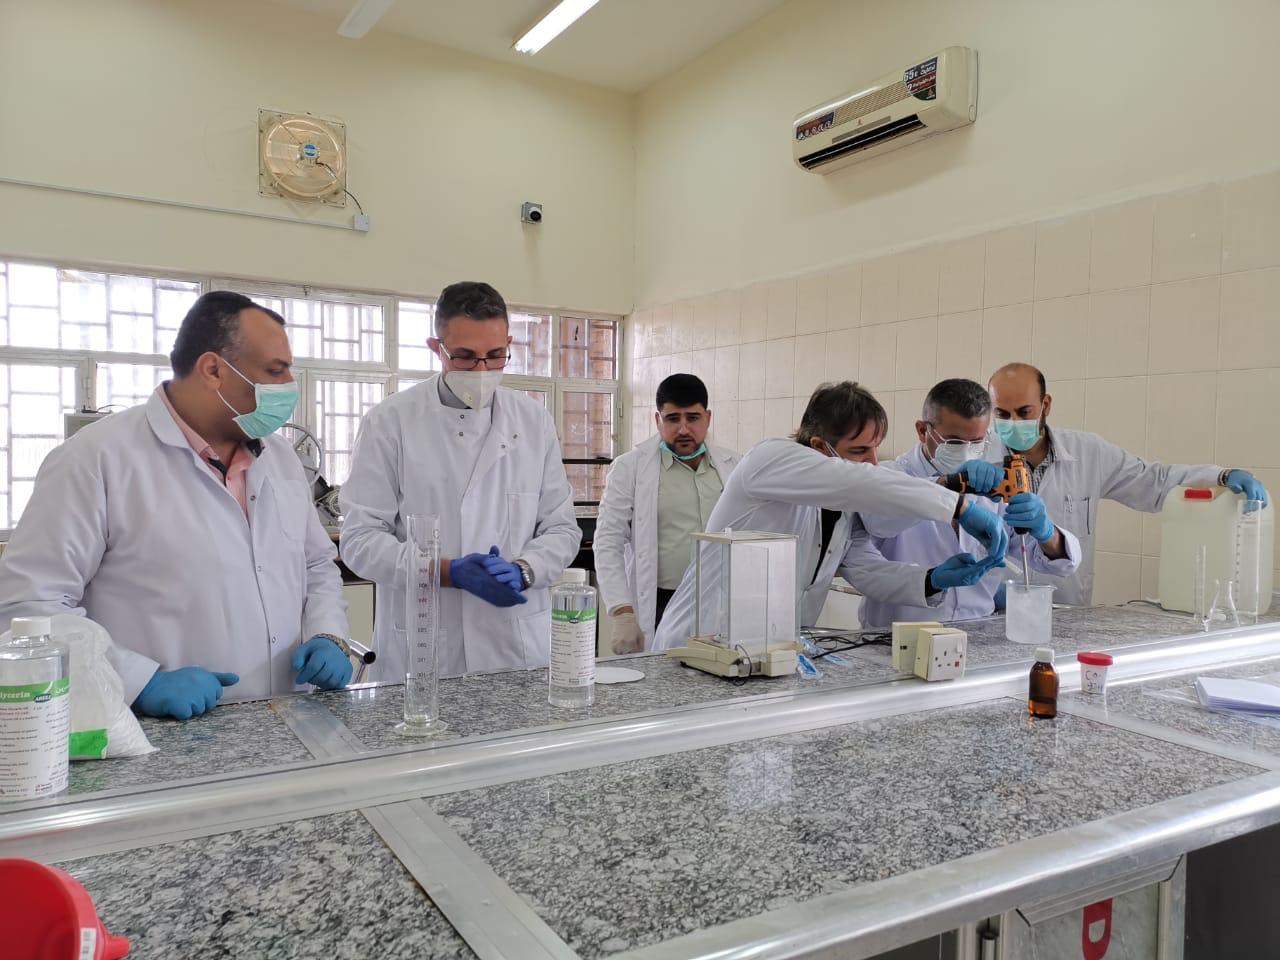 جامعة البصرة تصنع معقمات في مختبراتها للوقاية و مواجهة مخاطر كورونا فيروس